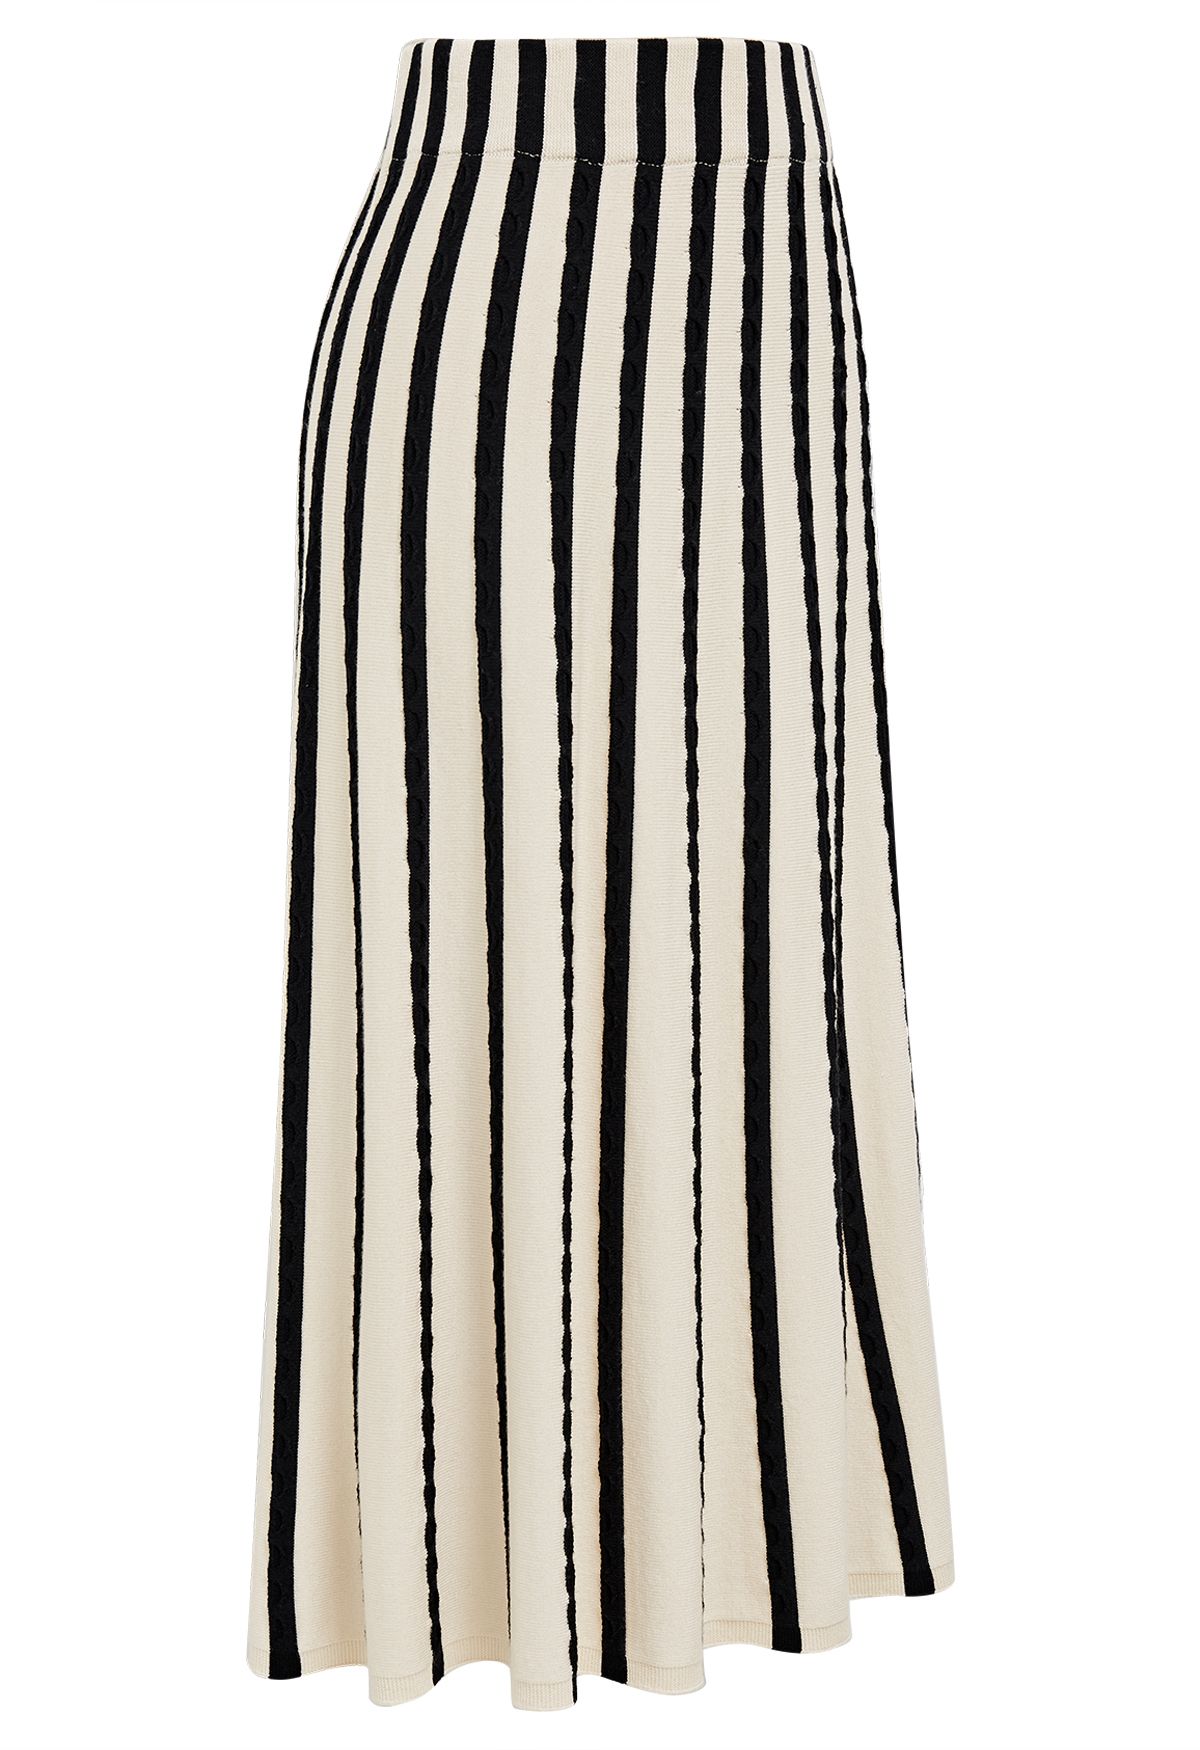 Saia de tricô textura ondulada listras zebra em marfim